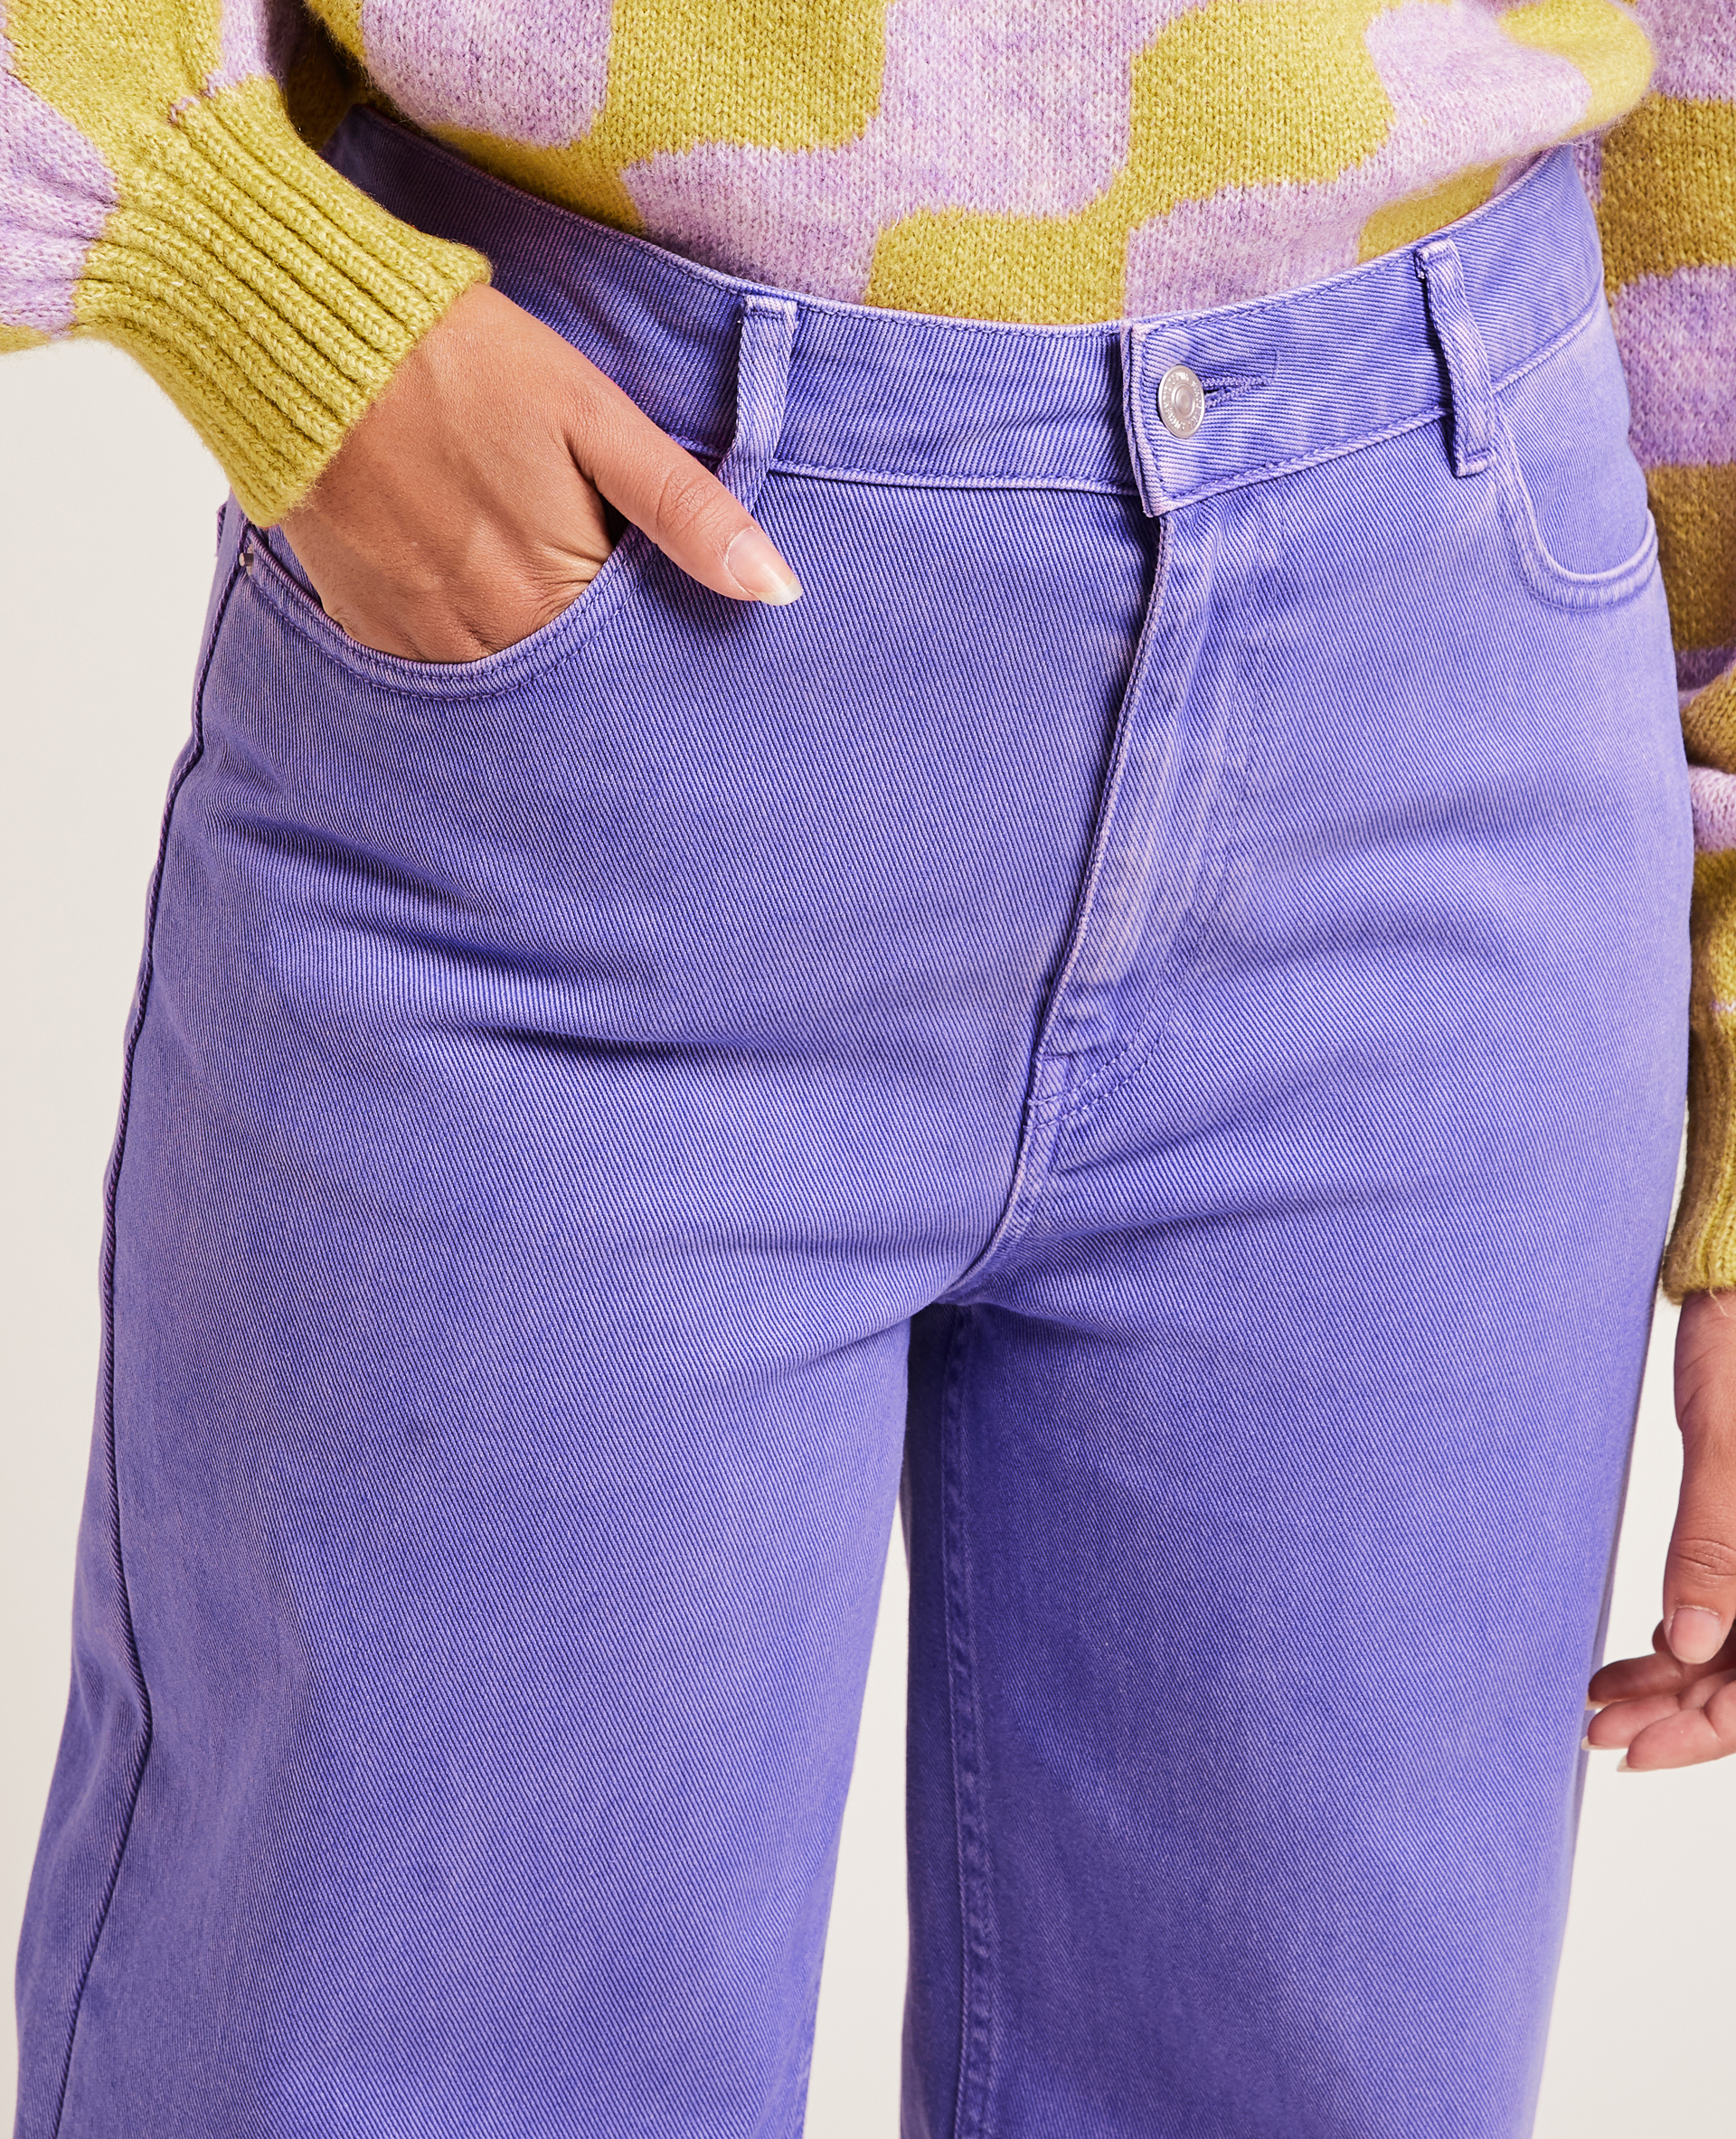 Jean wide leg couleur violet - Pimkie